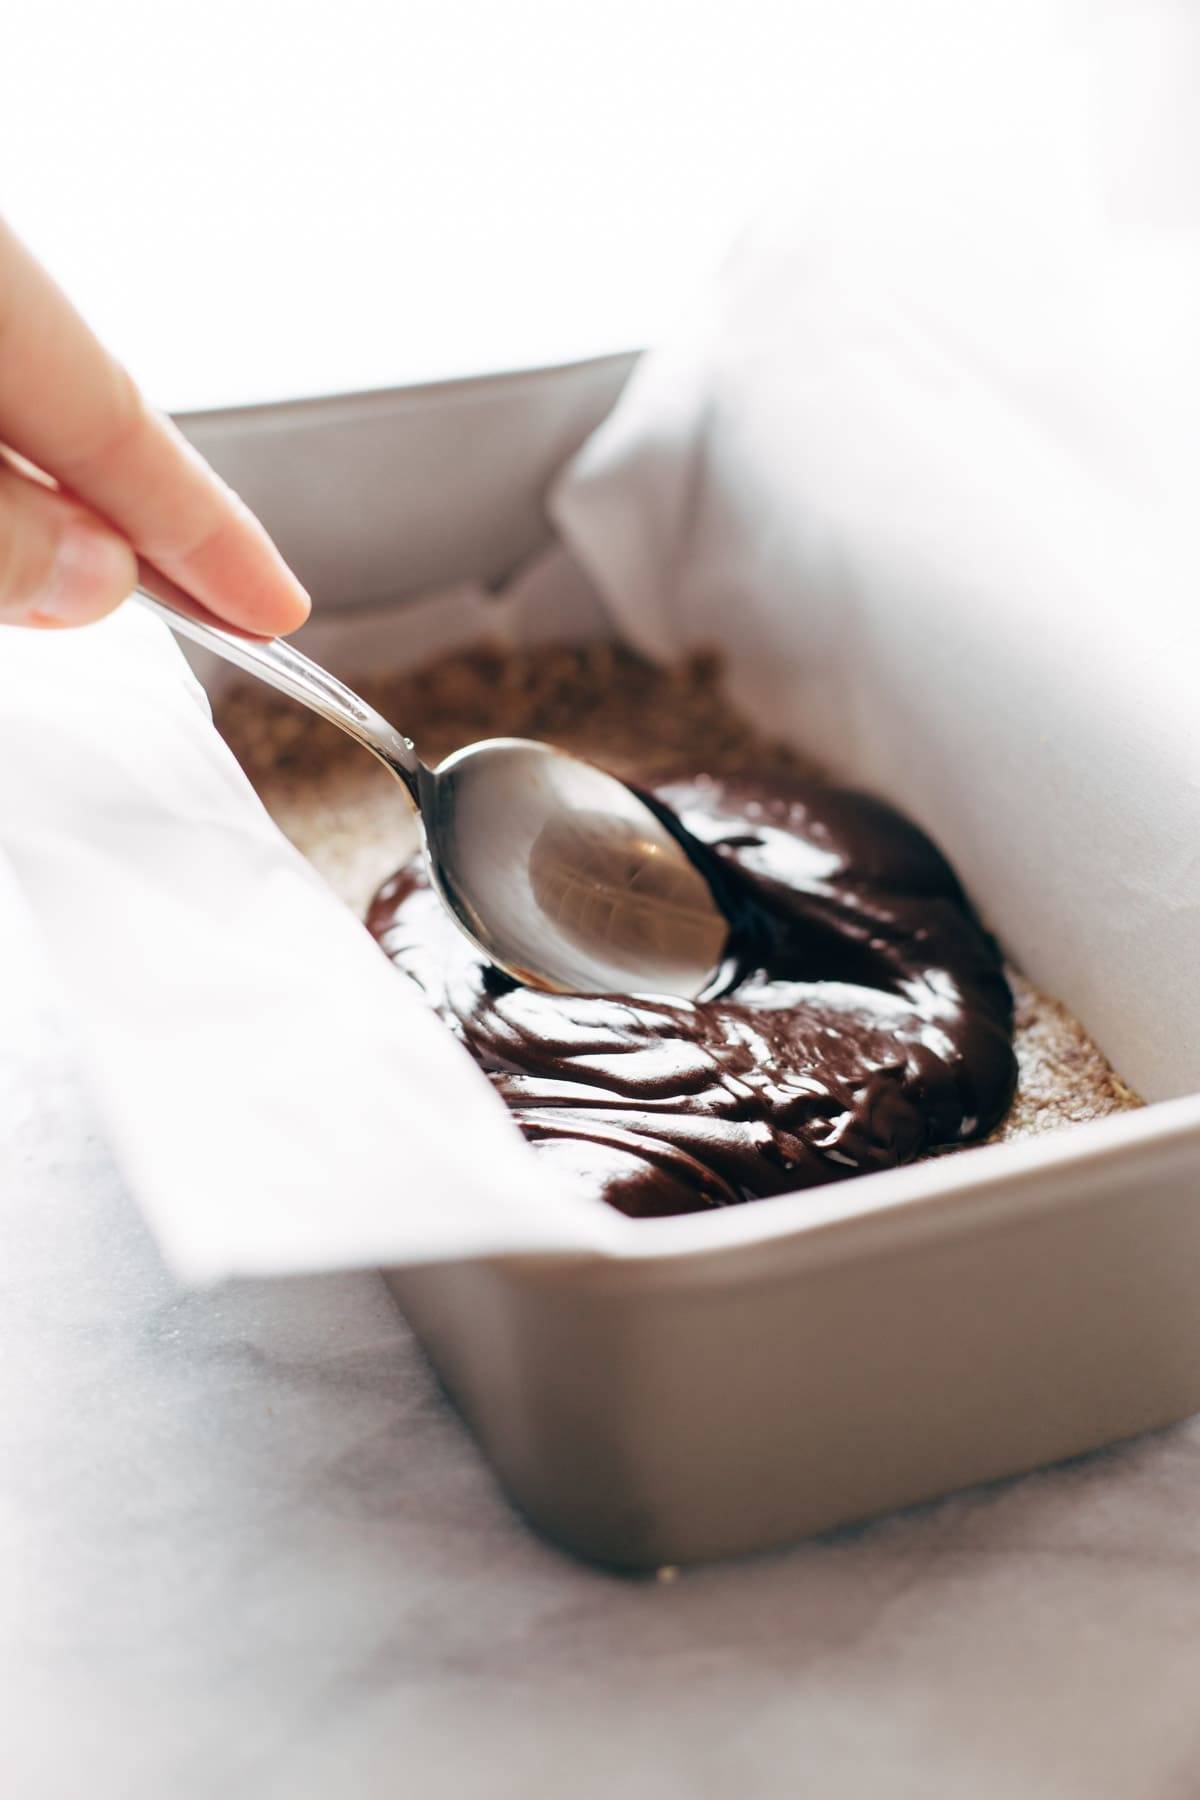 Cokelat Asin Mentah Batangan dalam wajan dengan sendok.